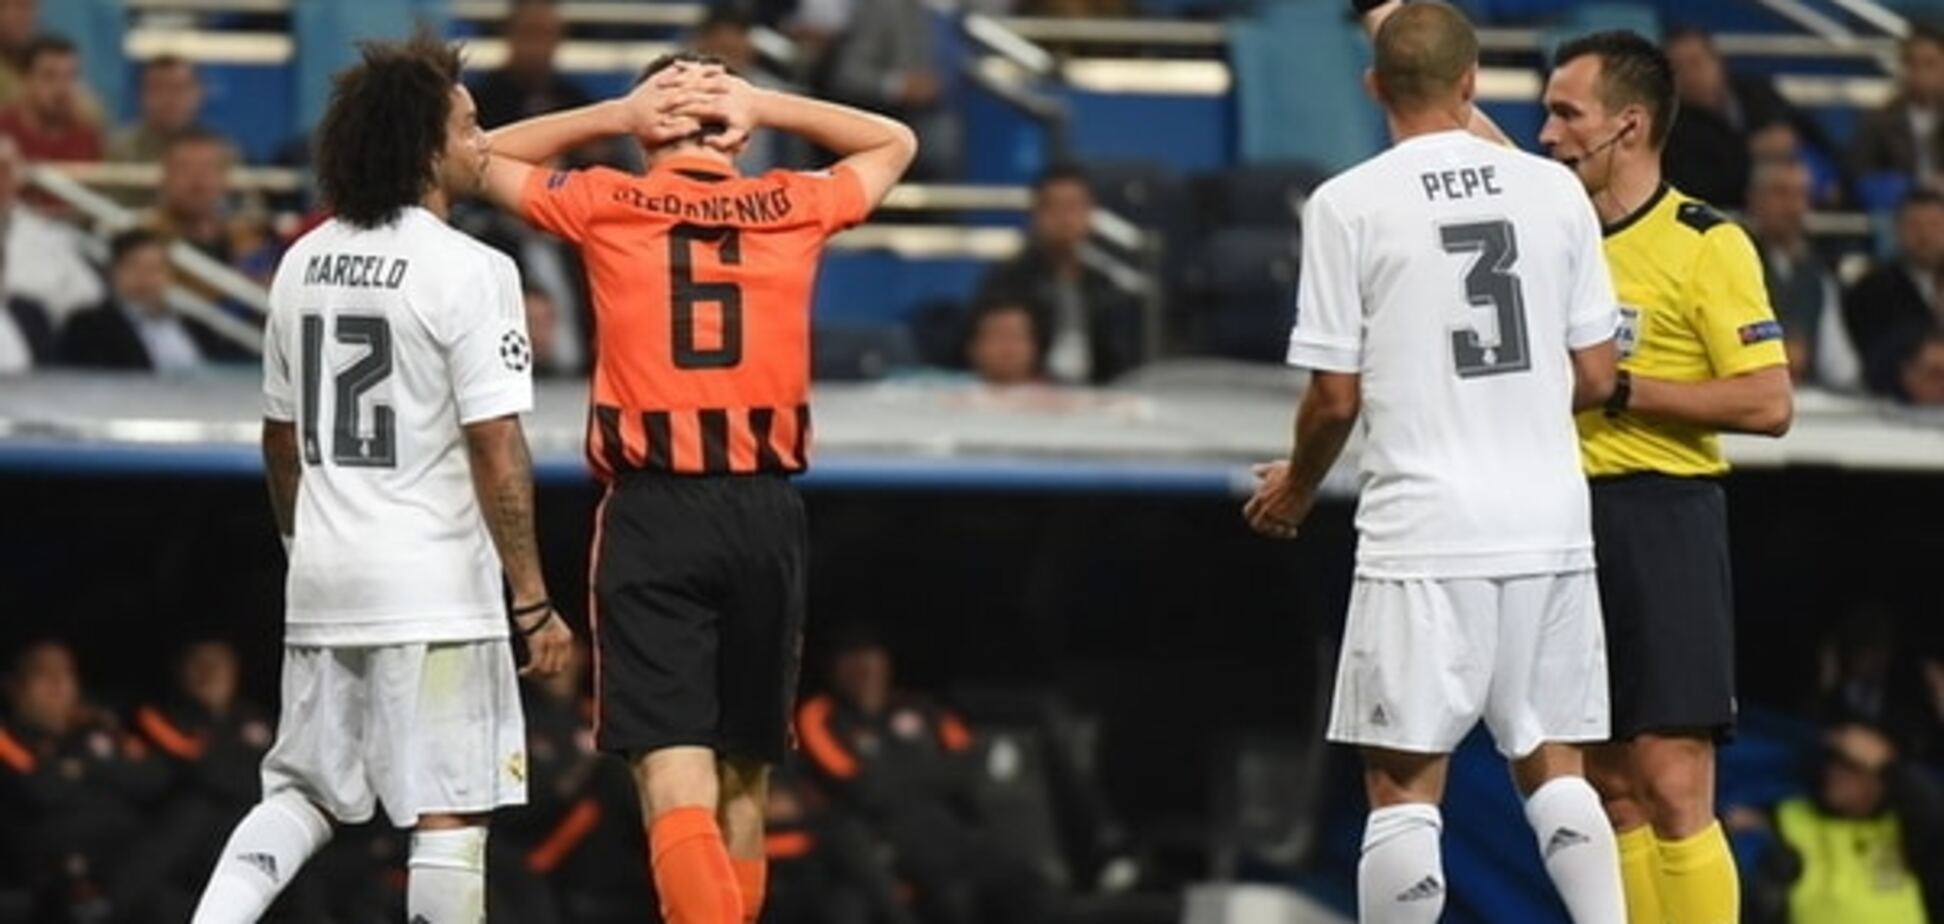 'Шахтер' опротестовал скандальное решение судьи в матче с 'Реалом'